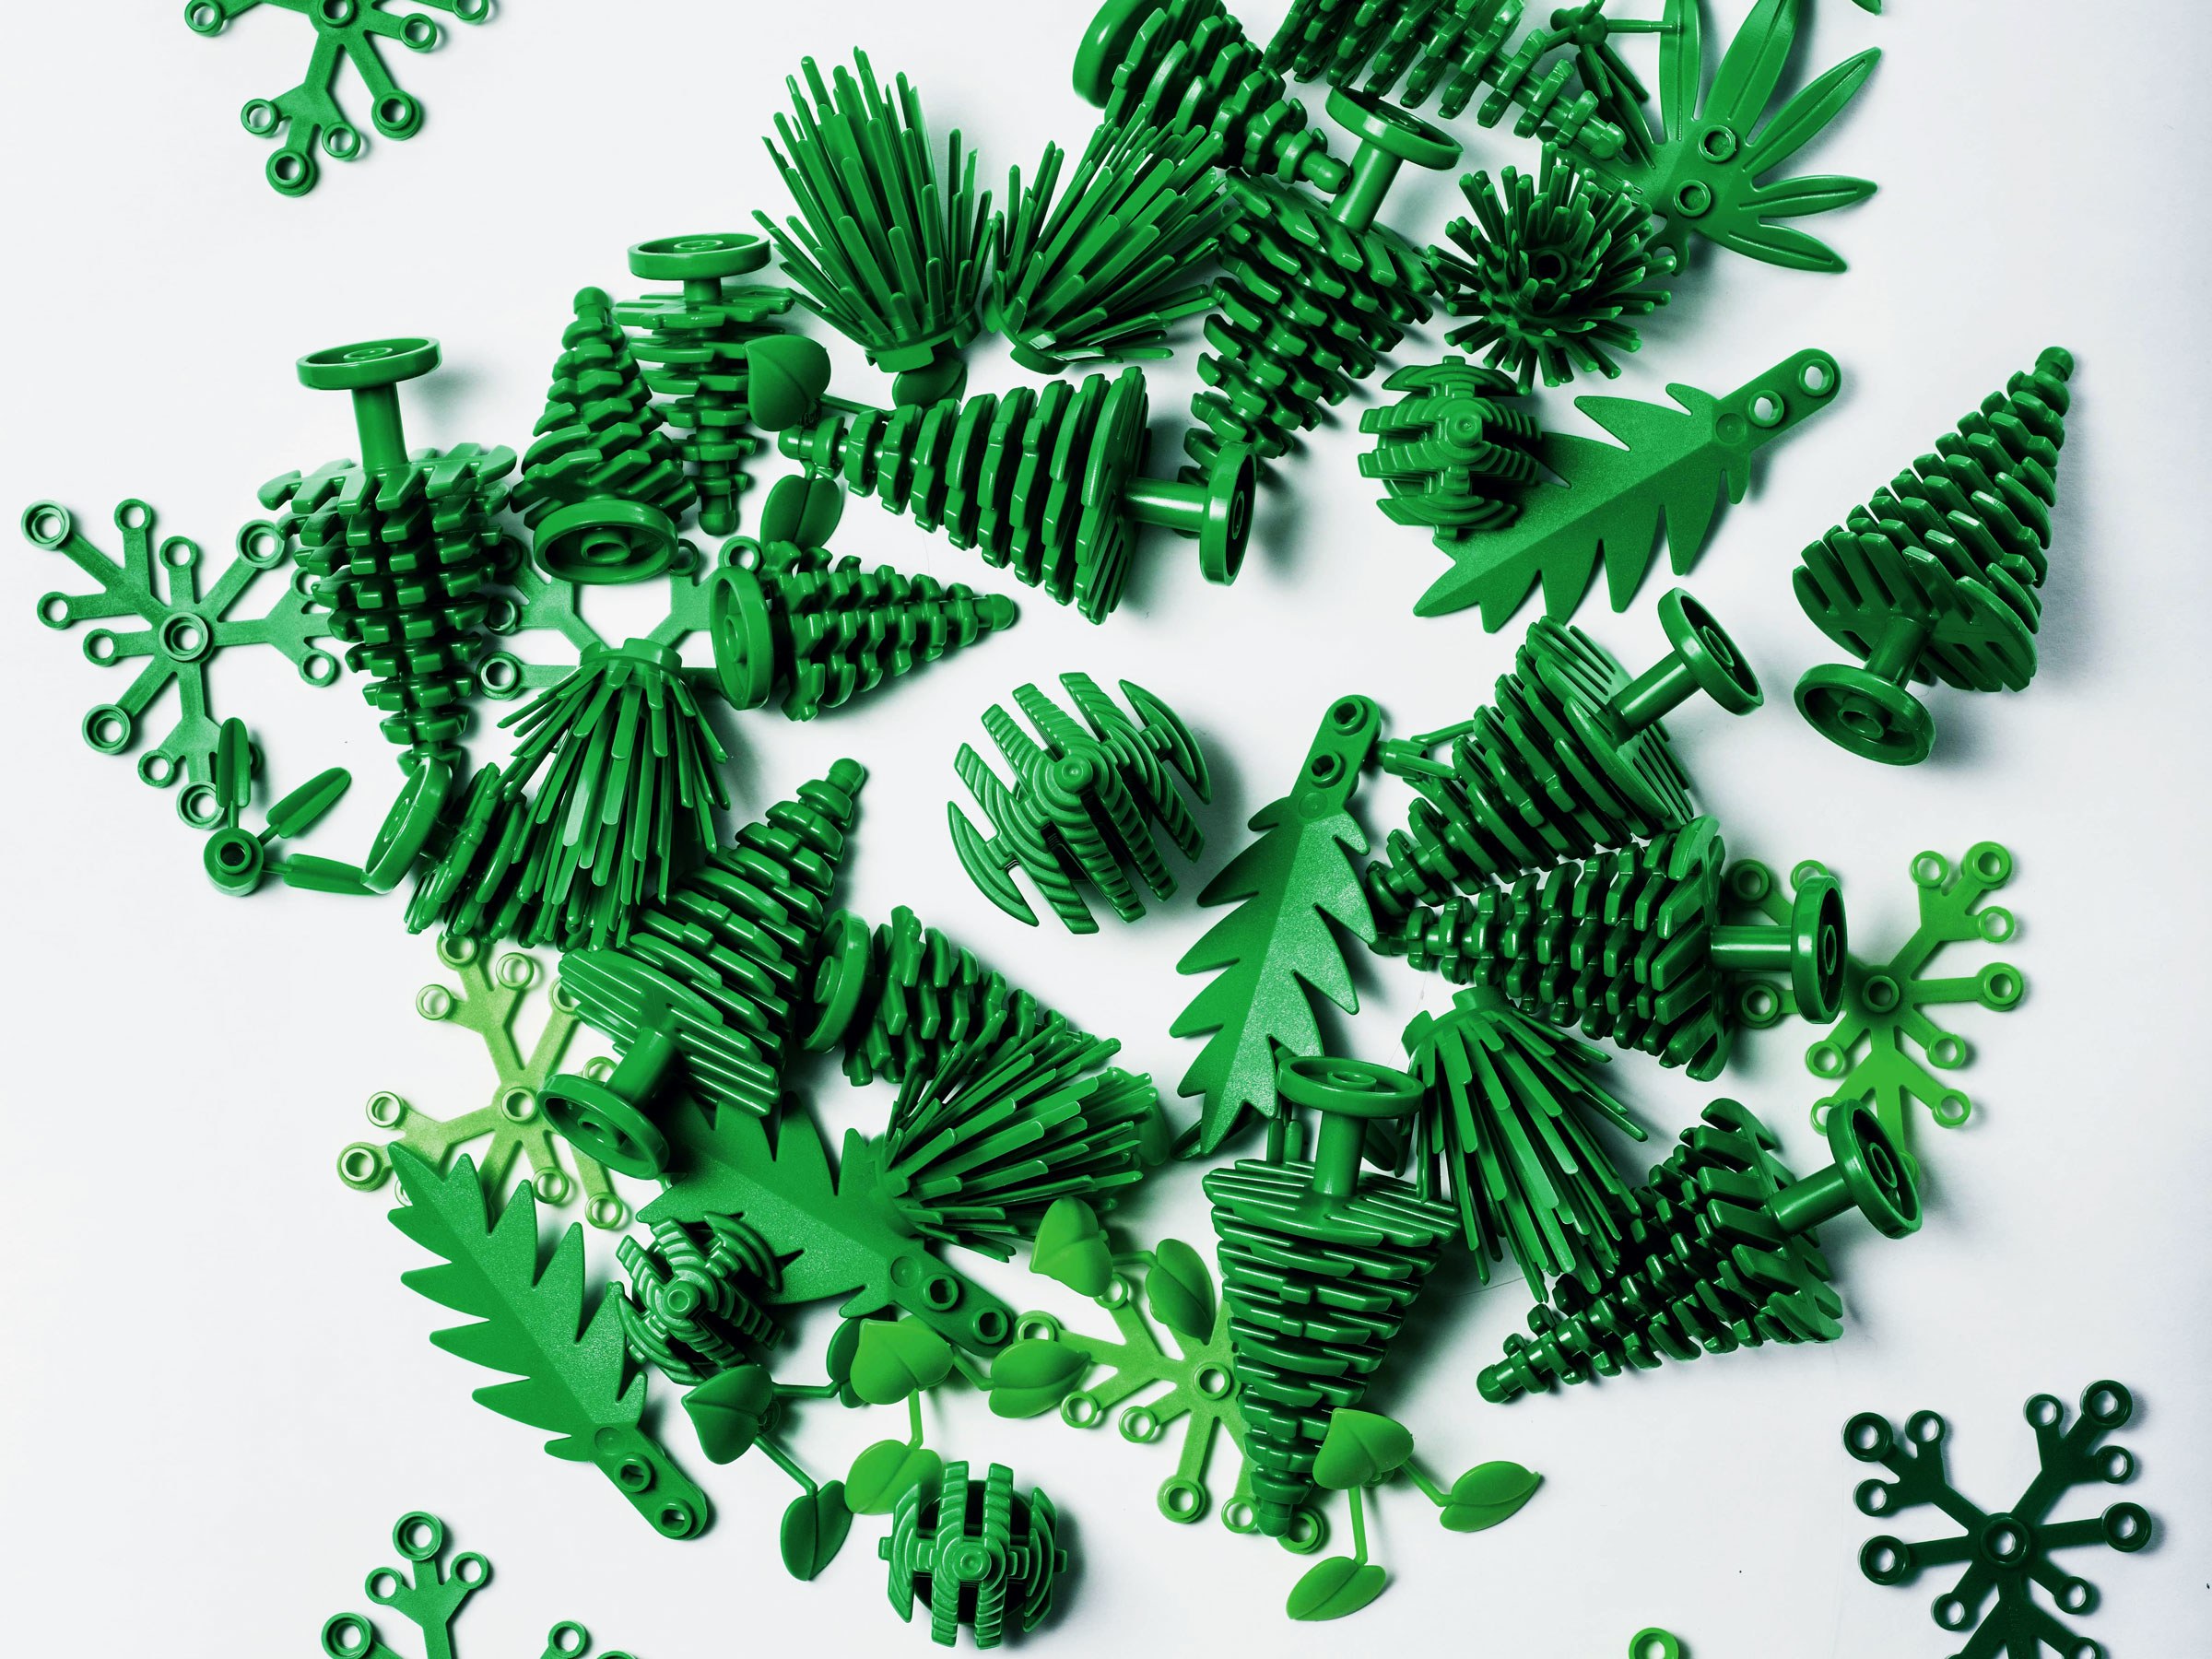 2018, LEGO의 지속가능한 성장을 위한 첫걸음